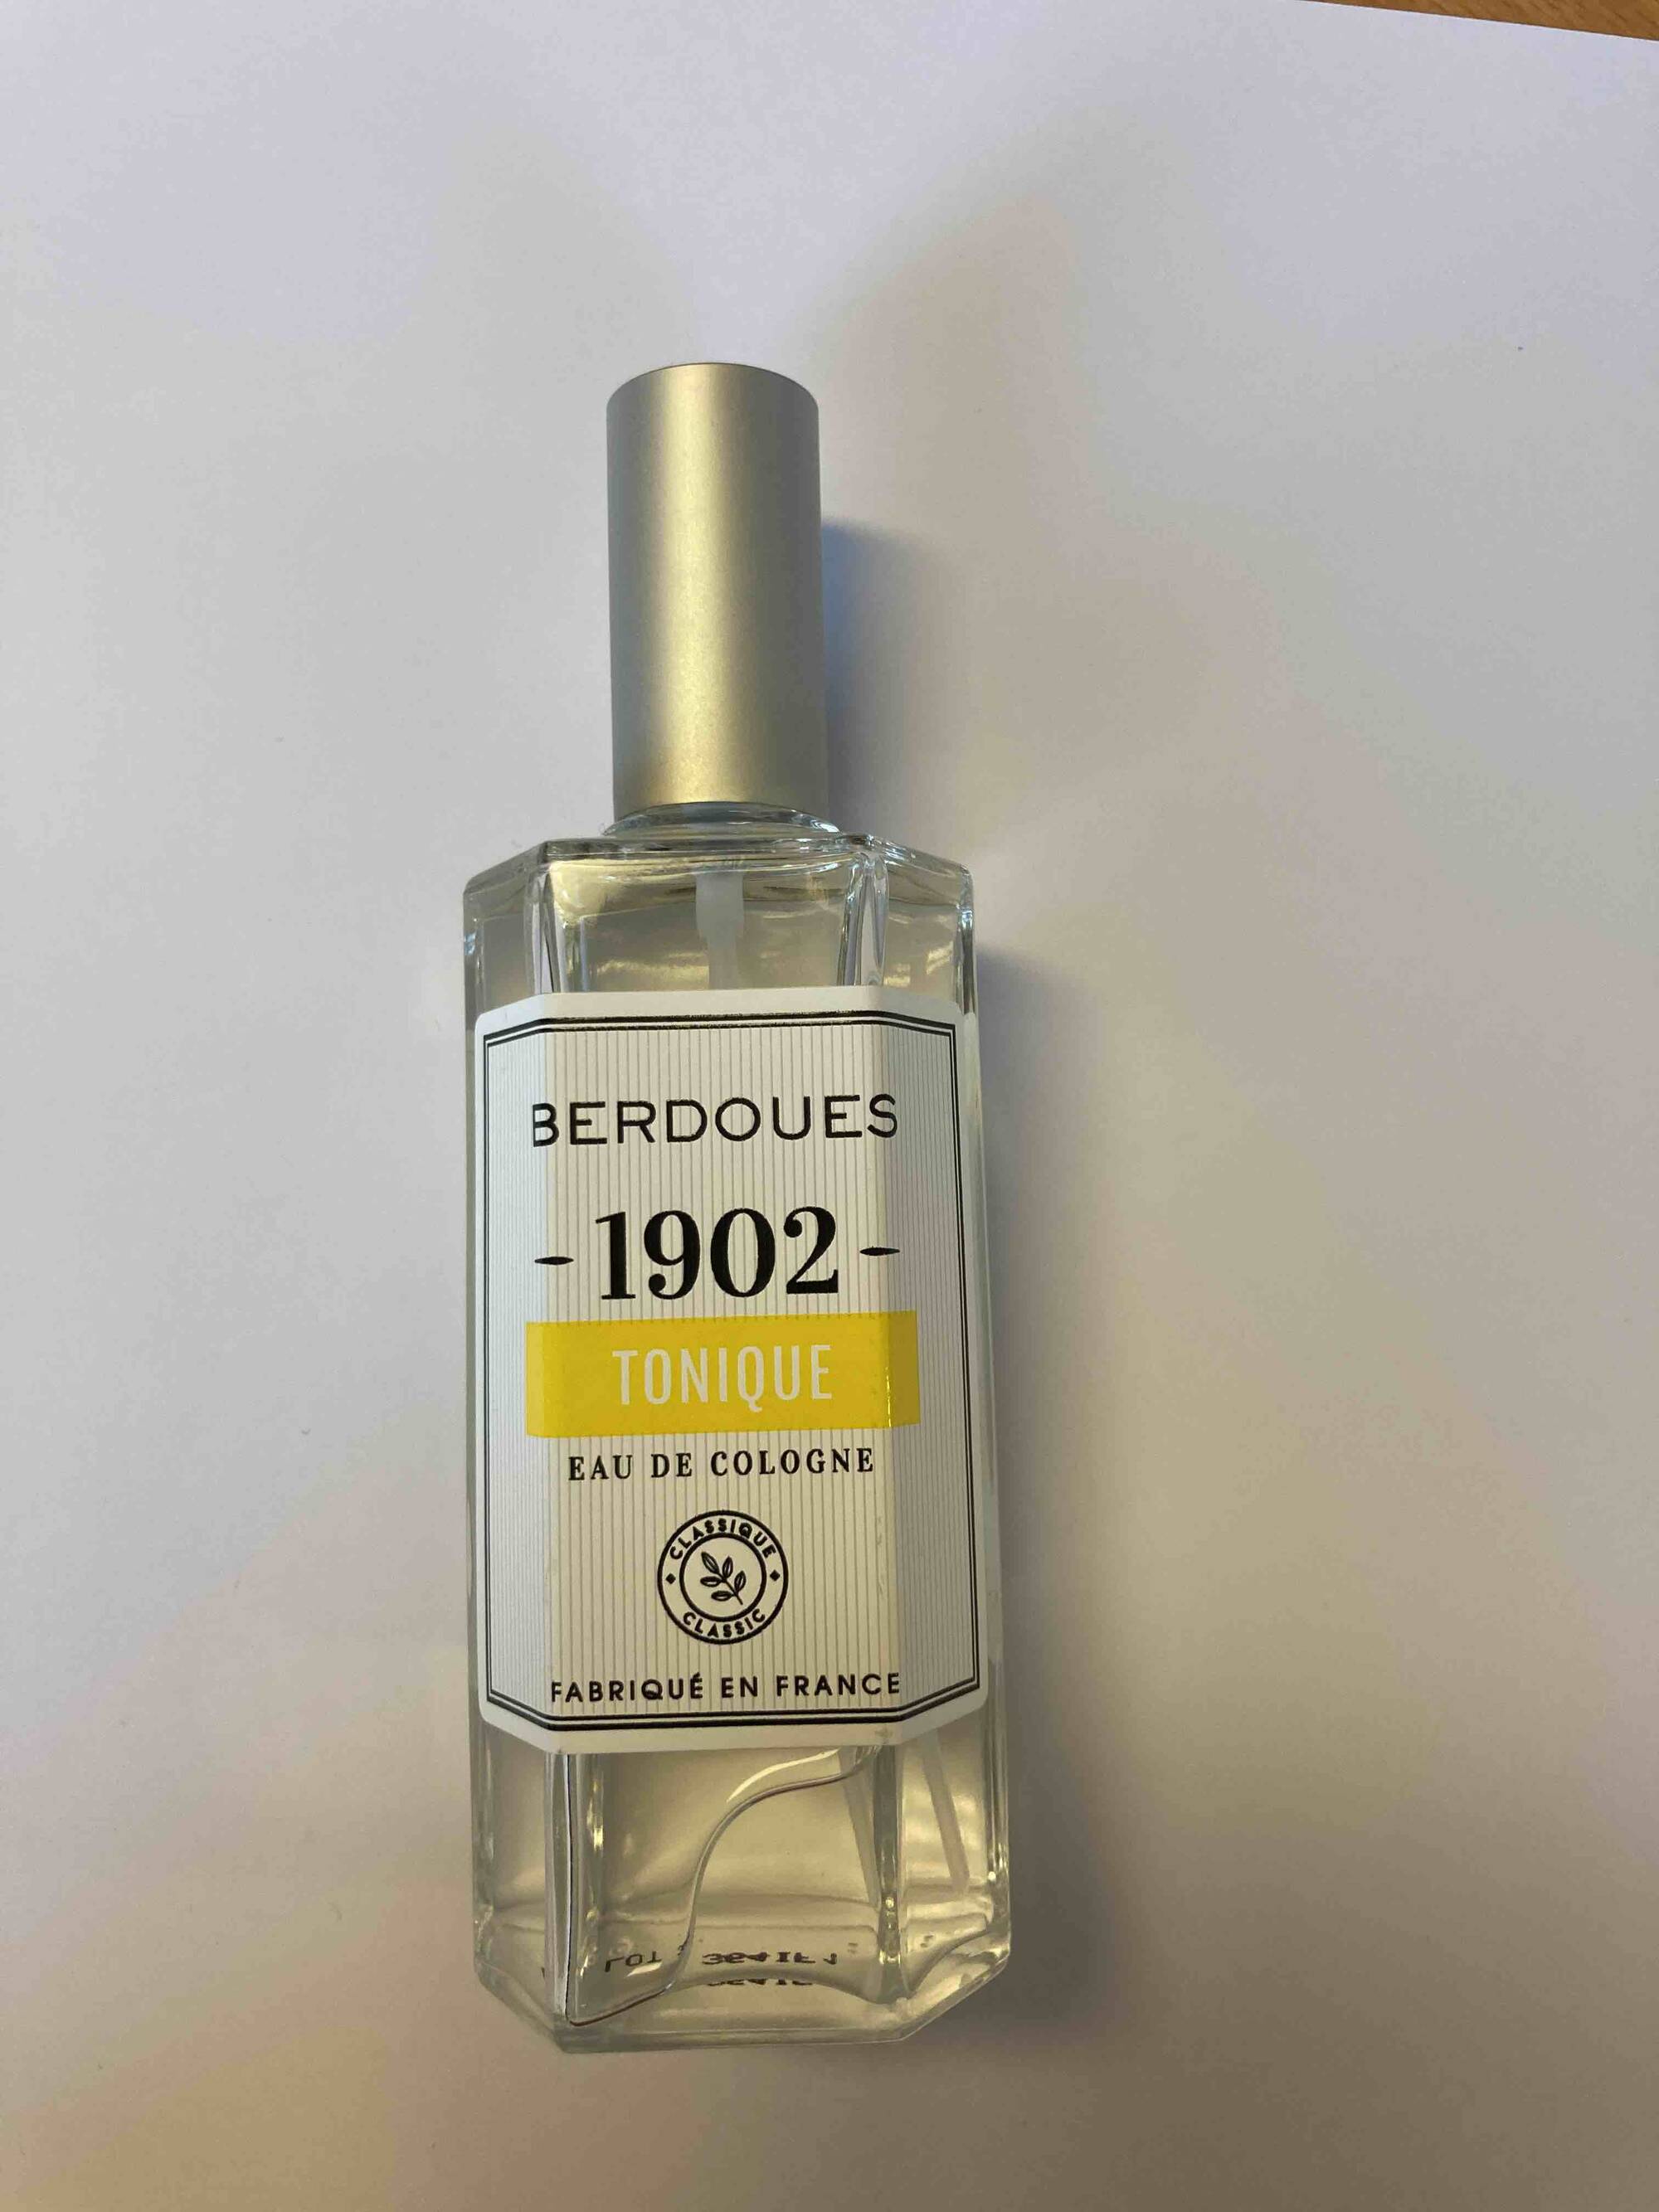 BERDOUES - 1902 Tonique - Eau de cologne